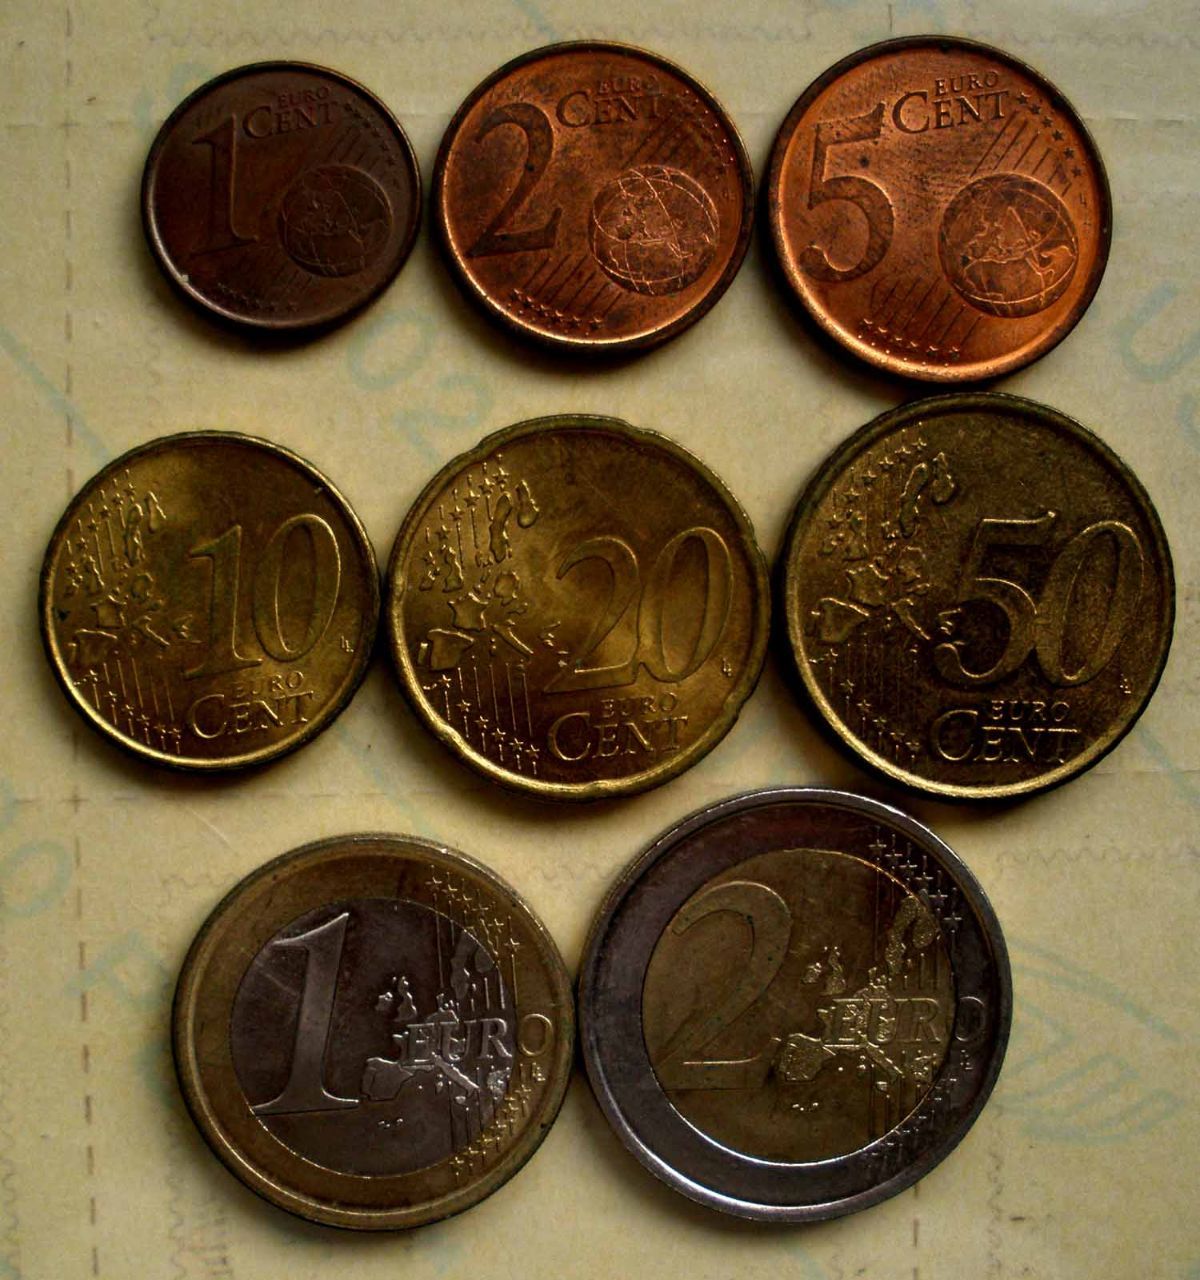 西班牙硬币图片大全图片